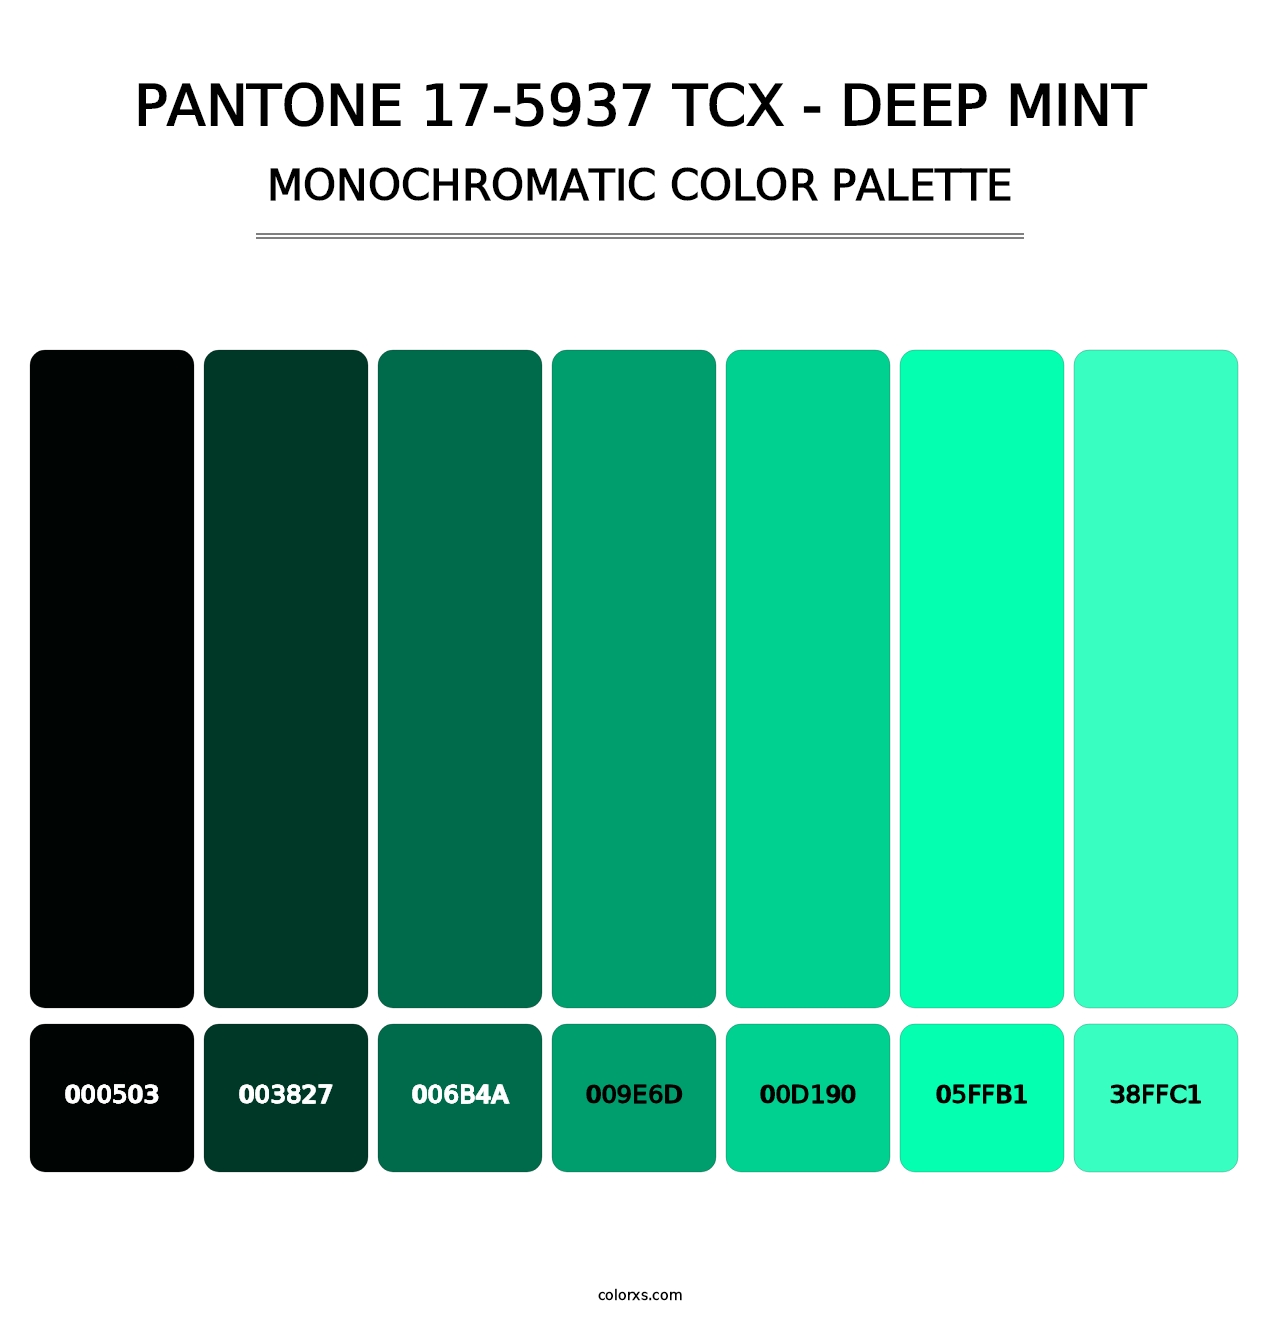 PANTONE 17-5937 TCX - Deep Mint - Monochromatic Color Palette